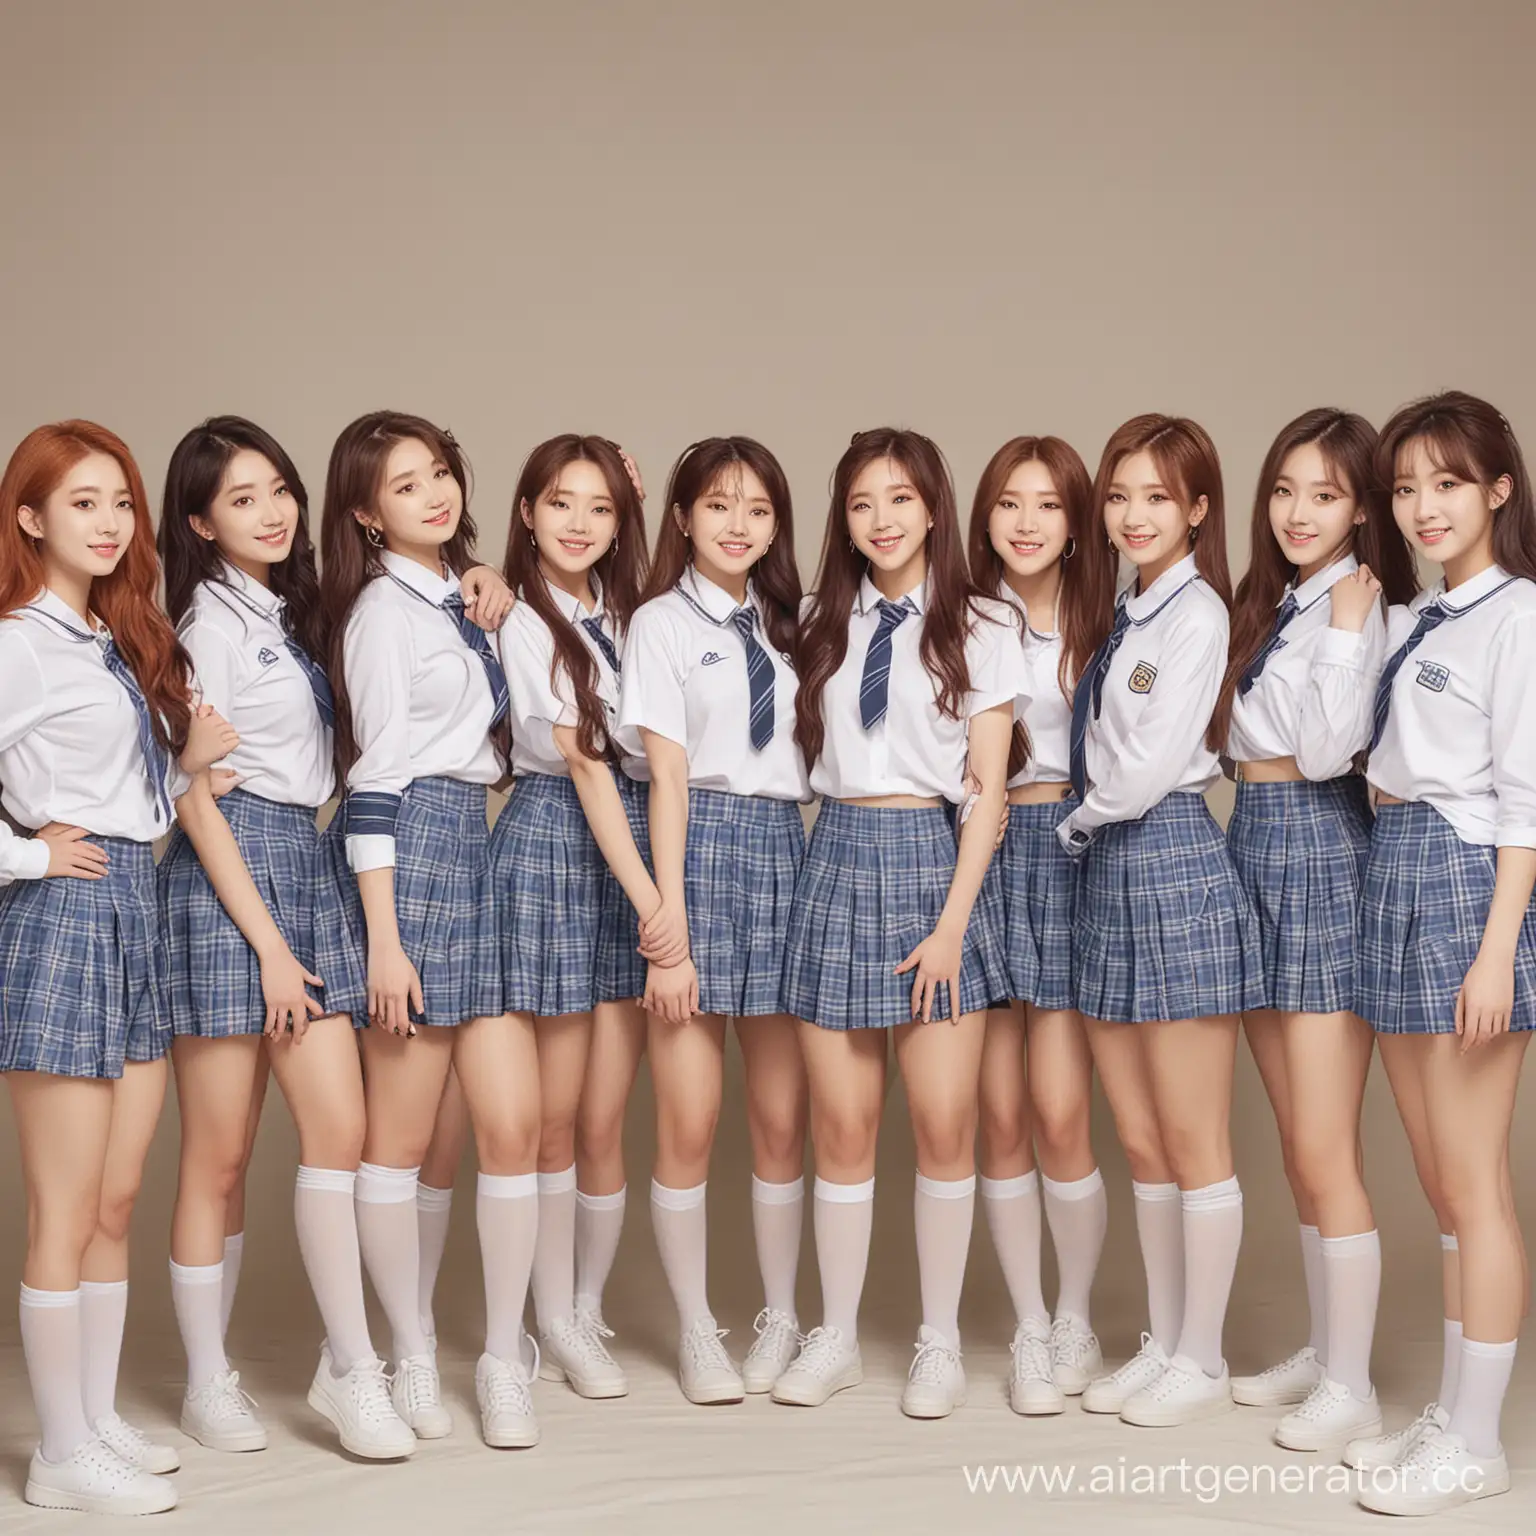 kpop girls group with school gentle concept